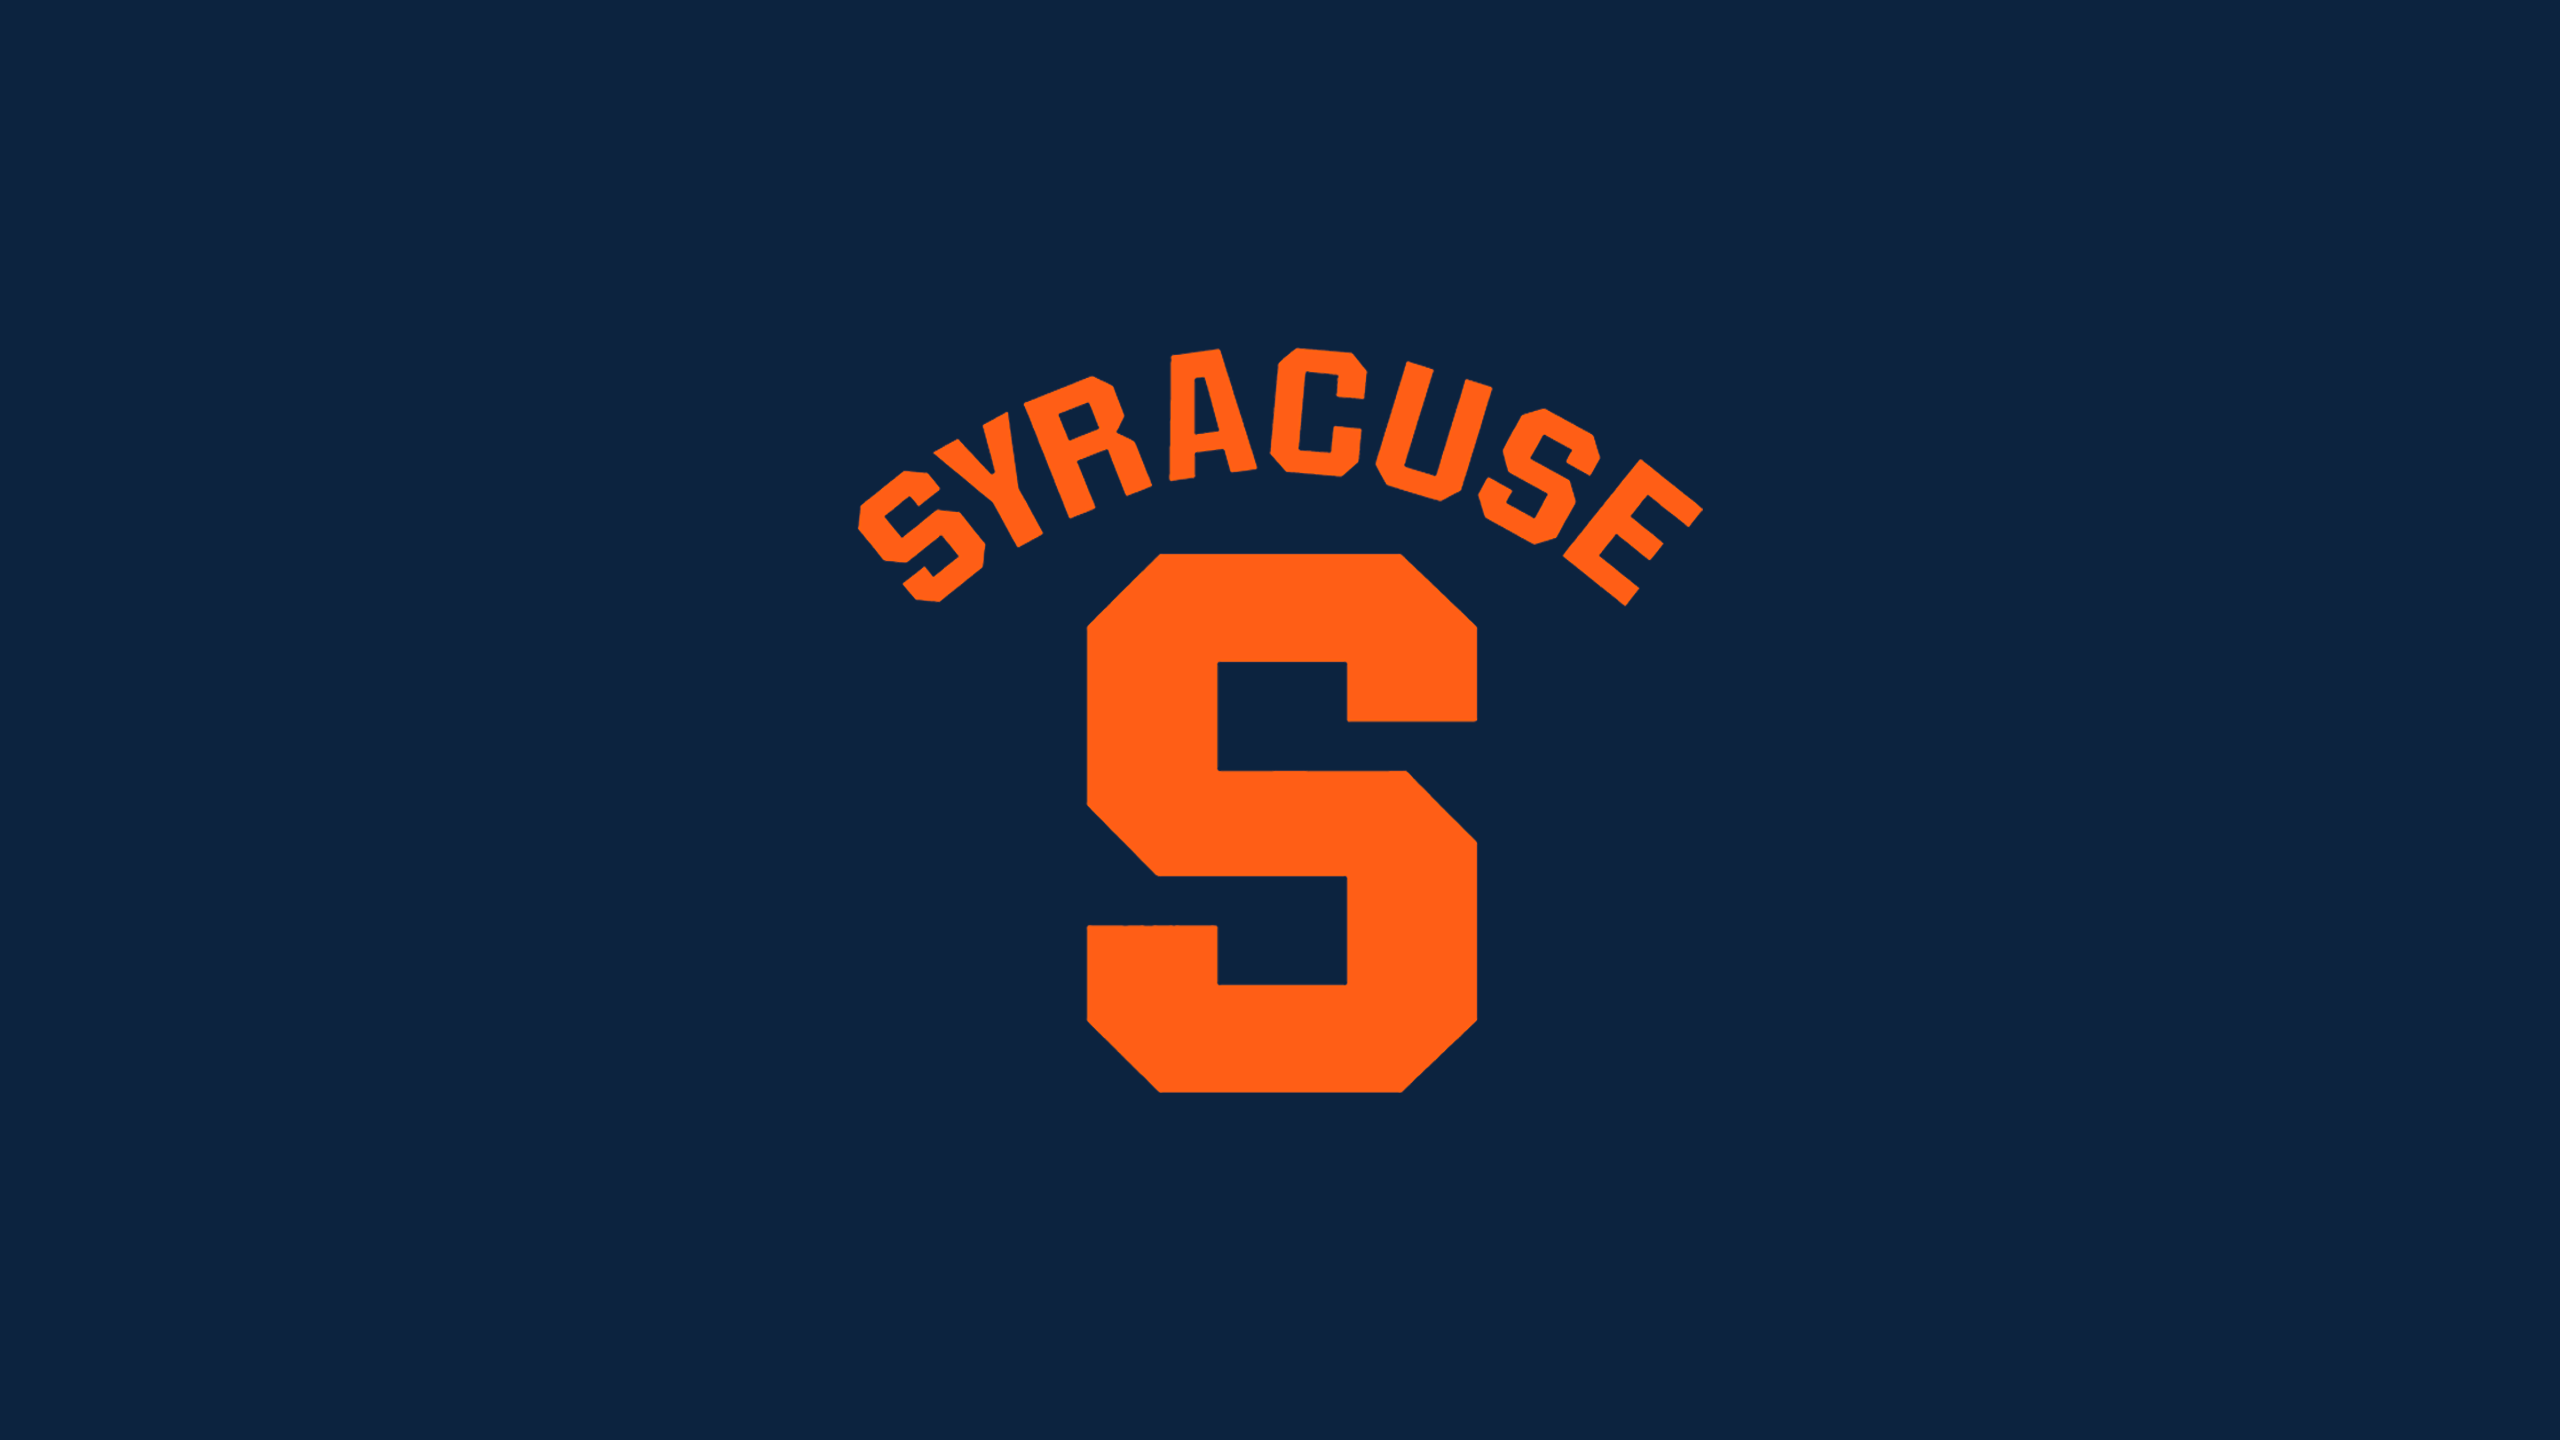 Syracuse Orange Football - NCAAF - Square Bettor